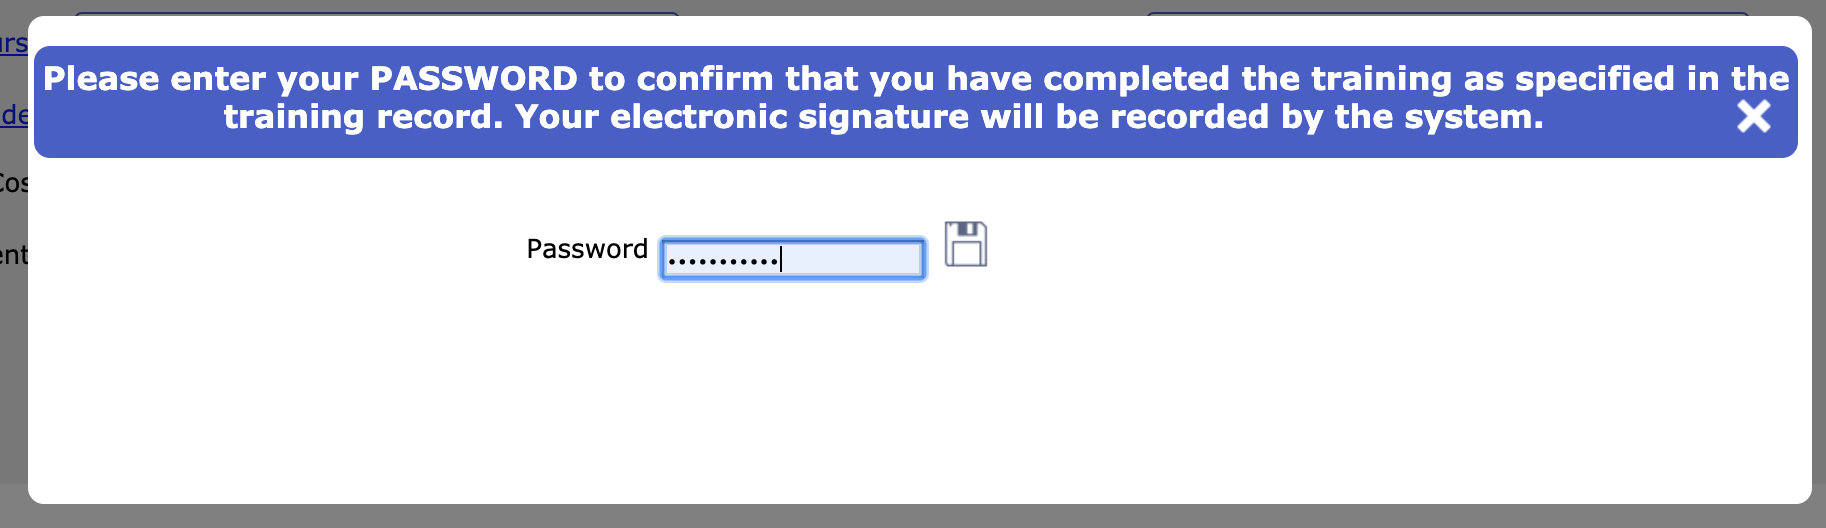 Training record e-signature